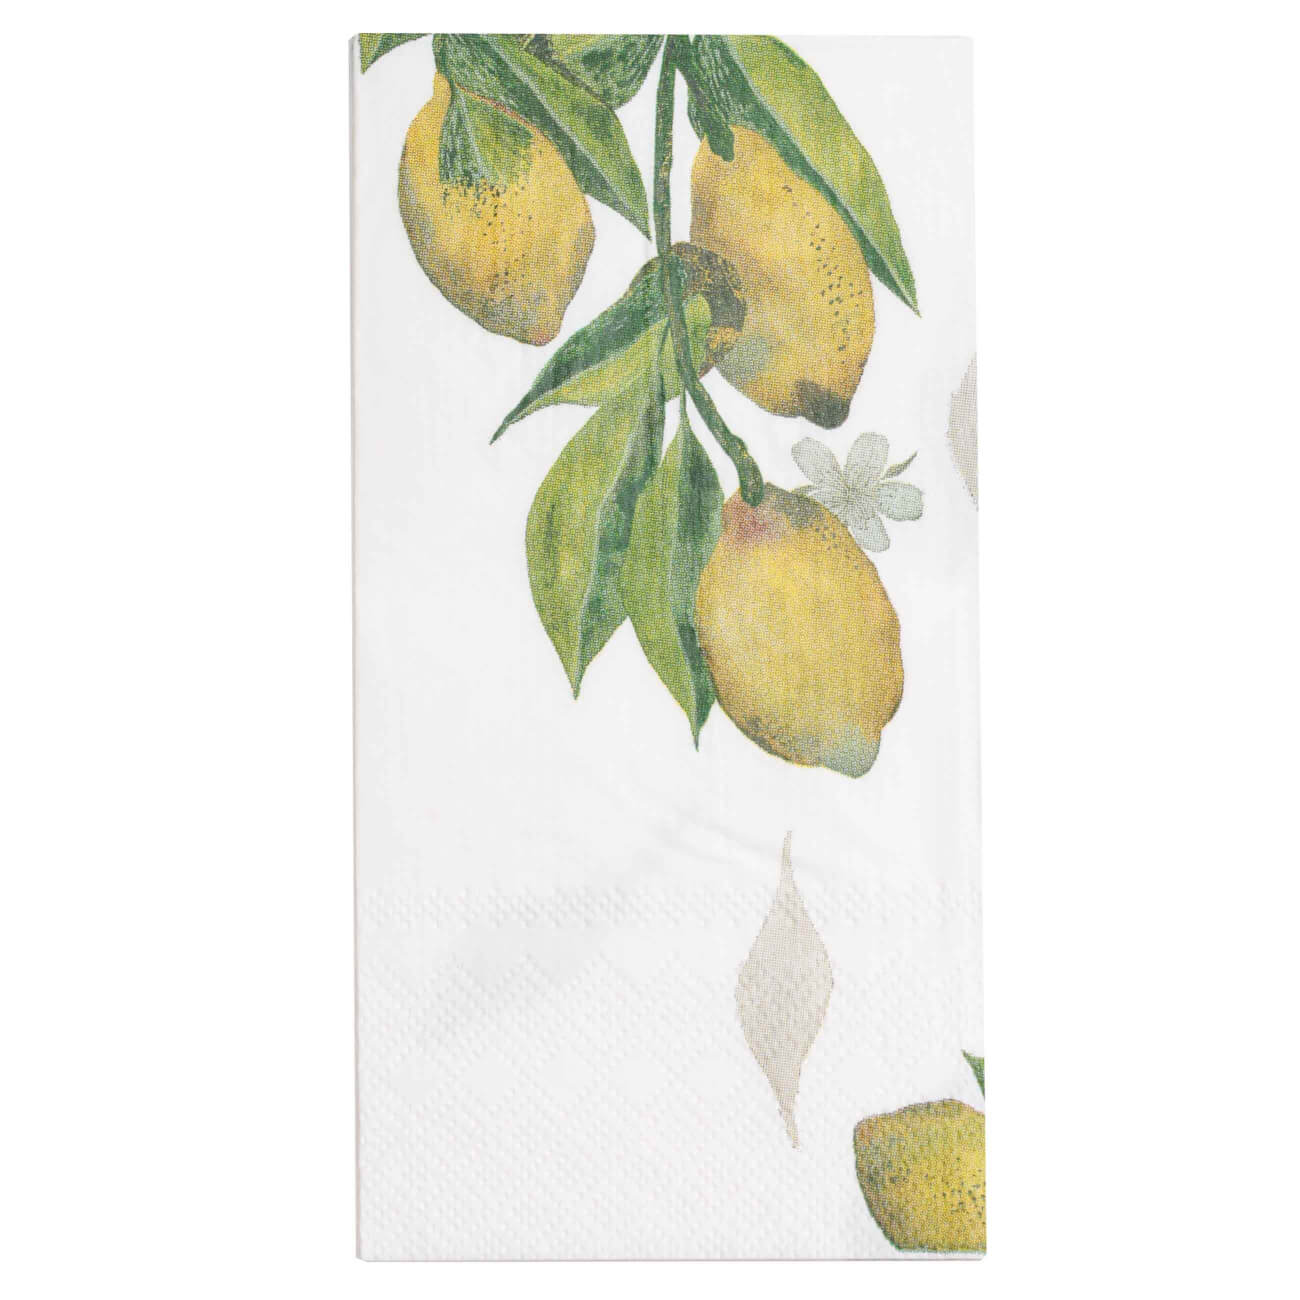 Салфетки бумажные, 33х33 см, 20 шт, прямоугольные, белые, Лимоны на ветке, Sicily in bloom салфетки бумажные 33х33 см 20 шт прямоугольные белые золотистые листья print